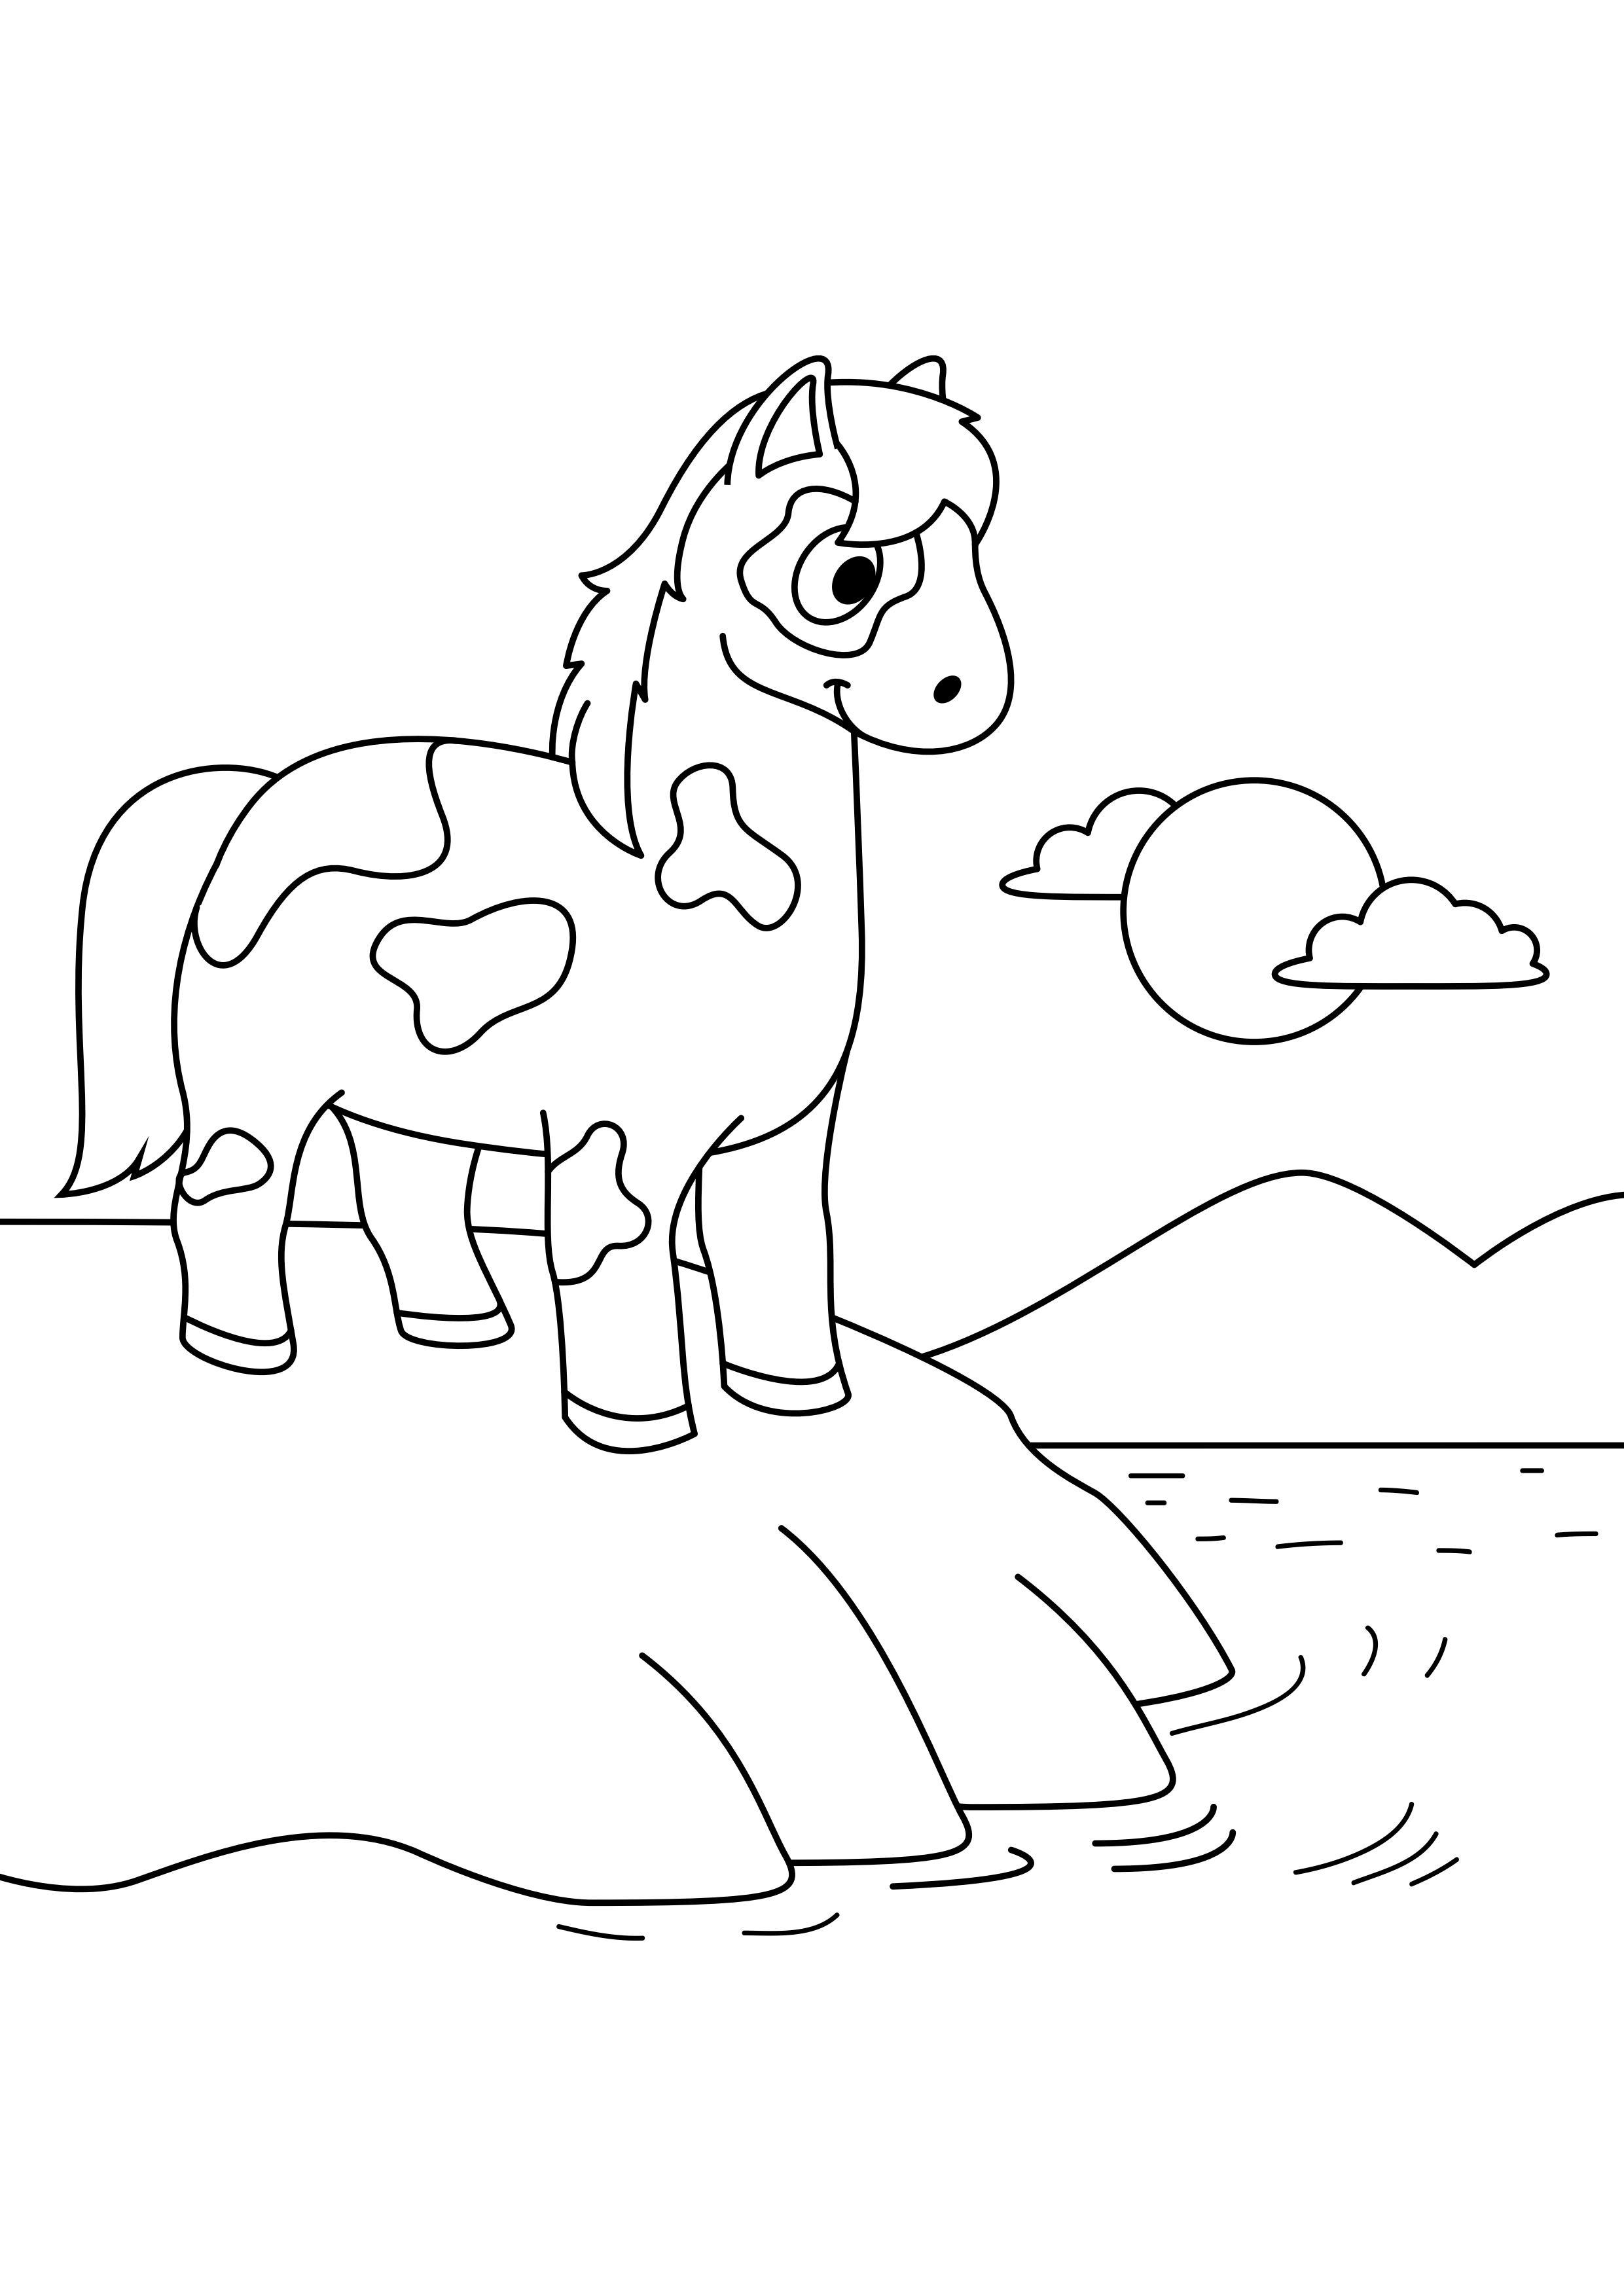 Dibujo para colorear caballo en el agua